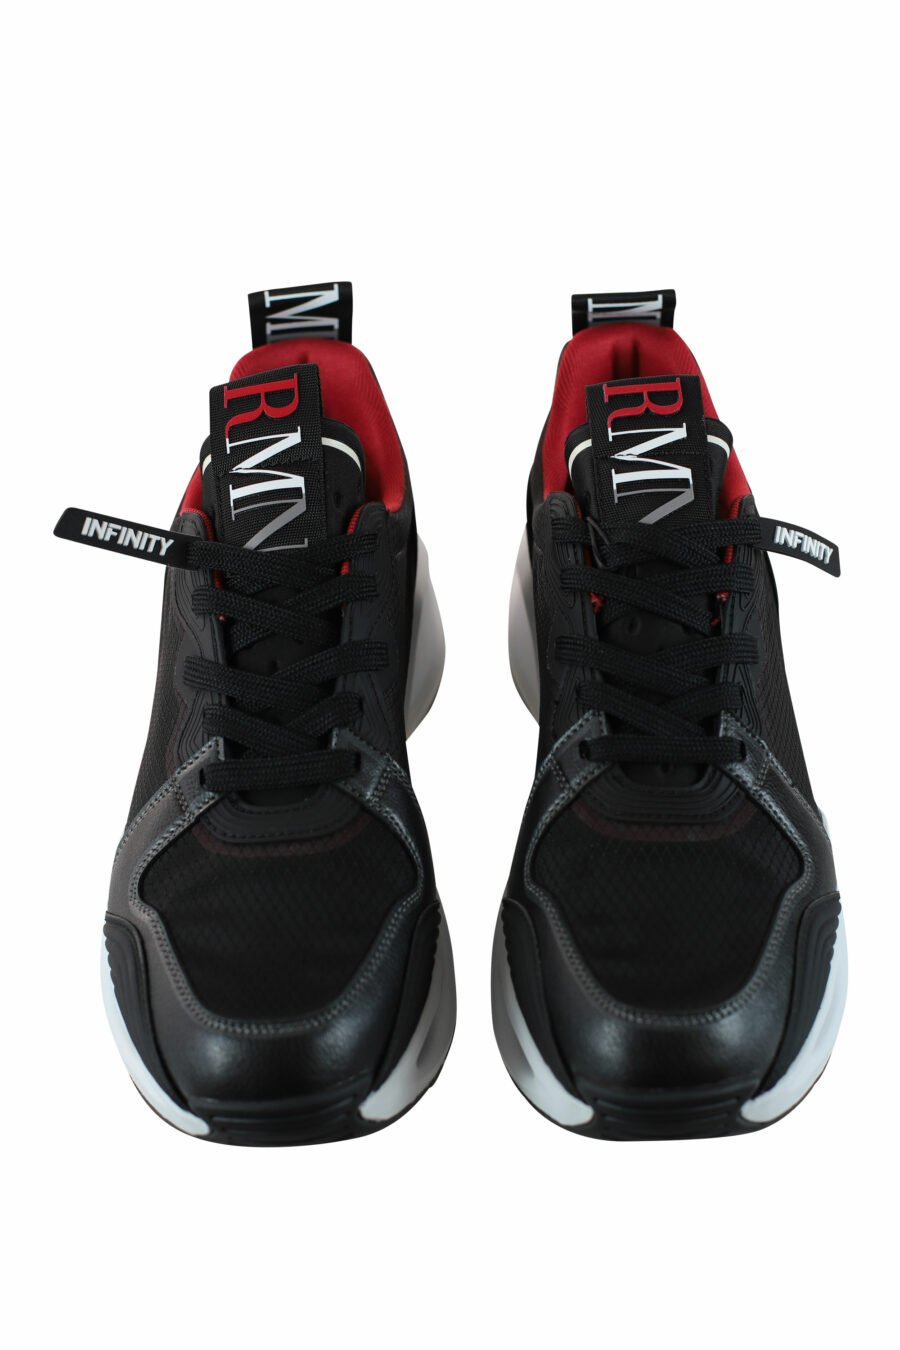 Zapatillas negras con detalles rojos "infinity evolution" - IMG 4360